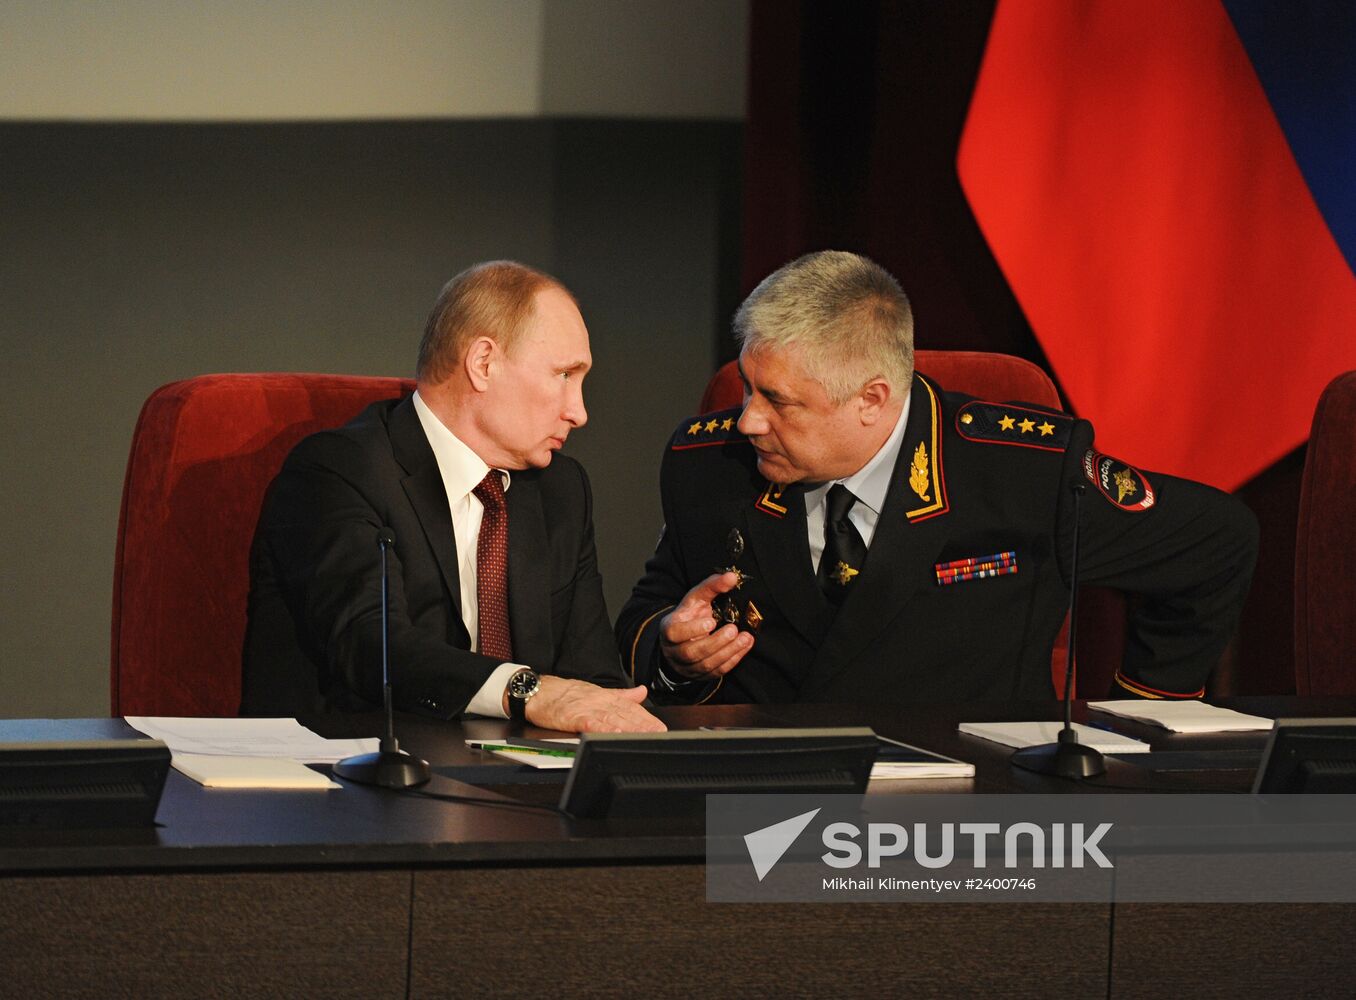 Vladimir Putin attends Interior Ministry's board meeting